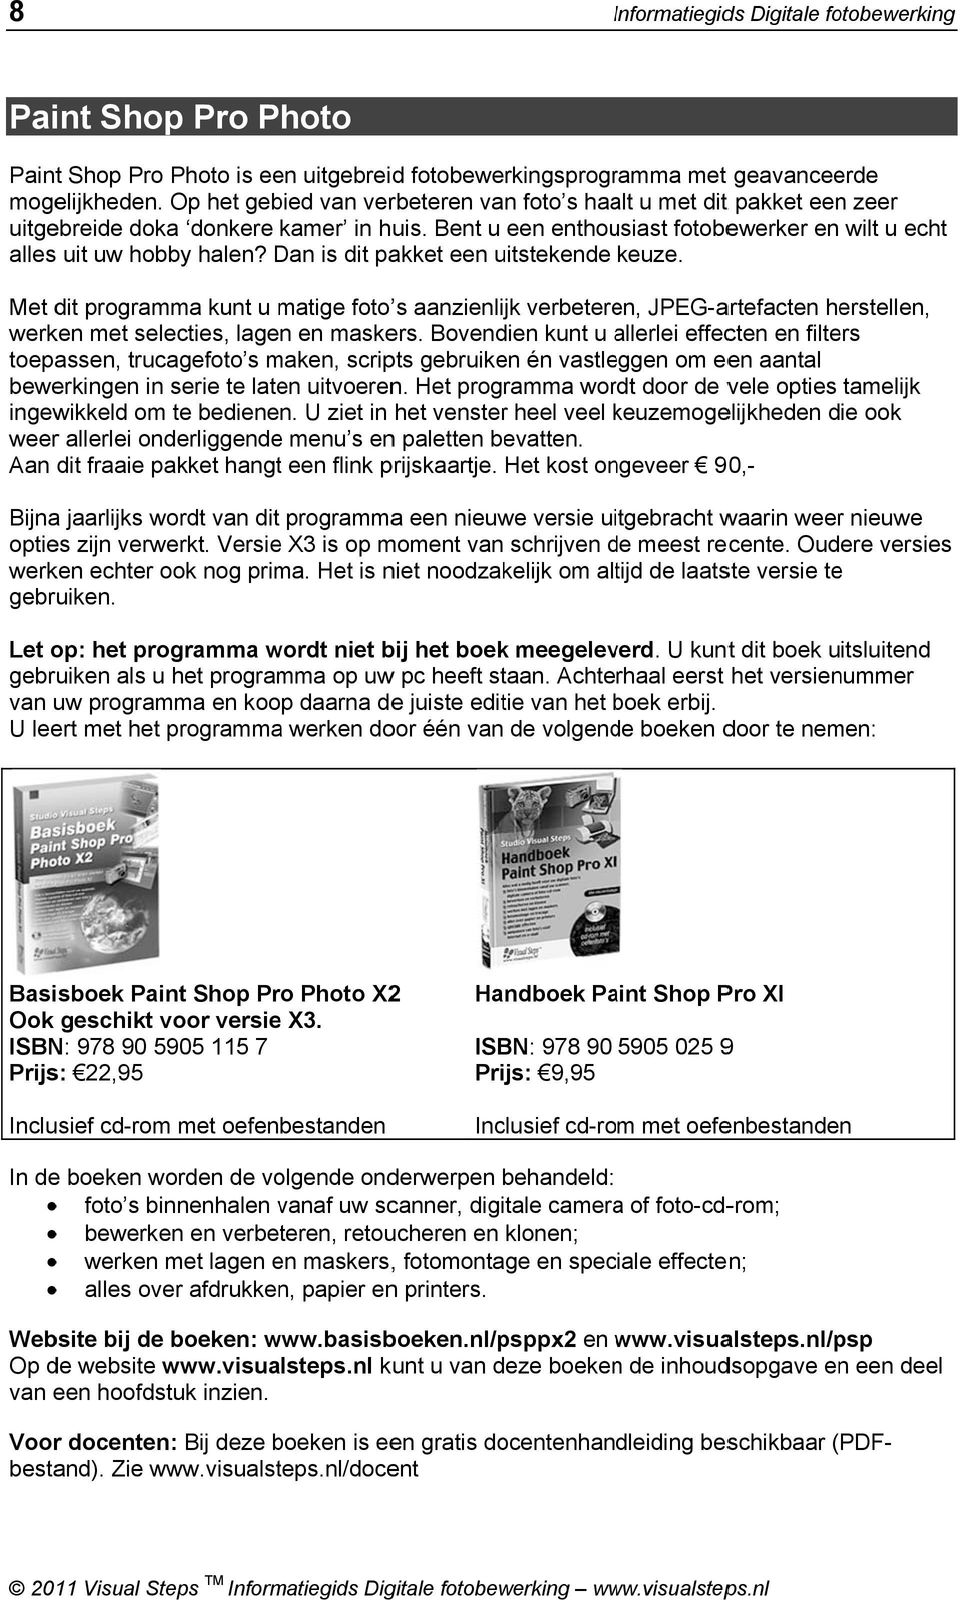 visualsteps.nl kunt u van deze boekenn de inhoudsopgave en een deel van een hoofdstuk inzien. Voor docenten: Bij deze boeken is een gratis docentenhandleiding beschikbaar ( PDF- bestand). Zie www.